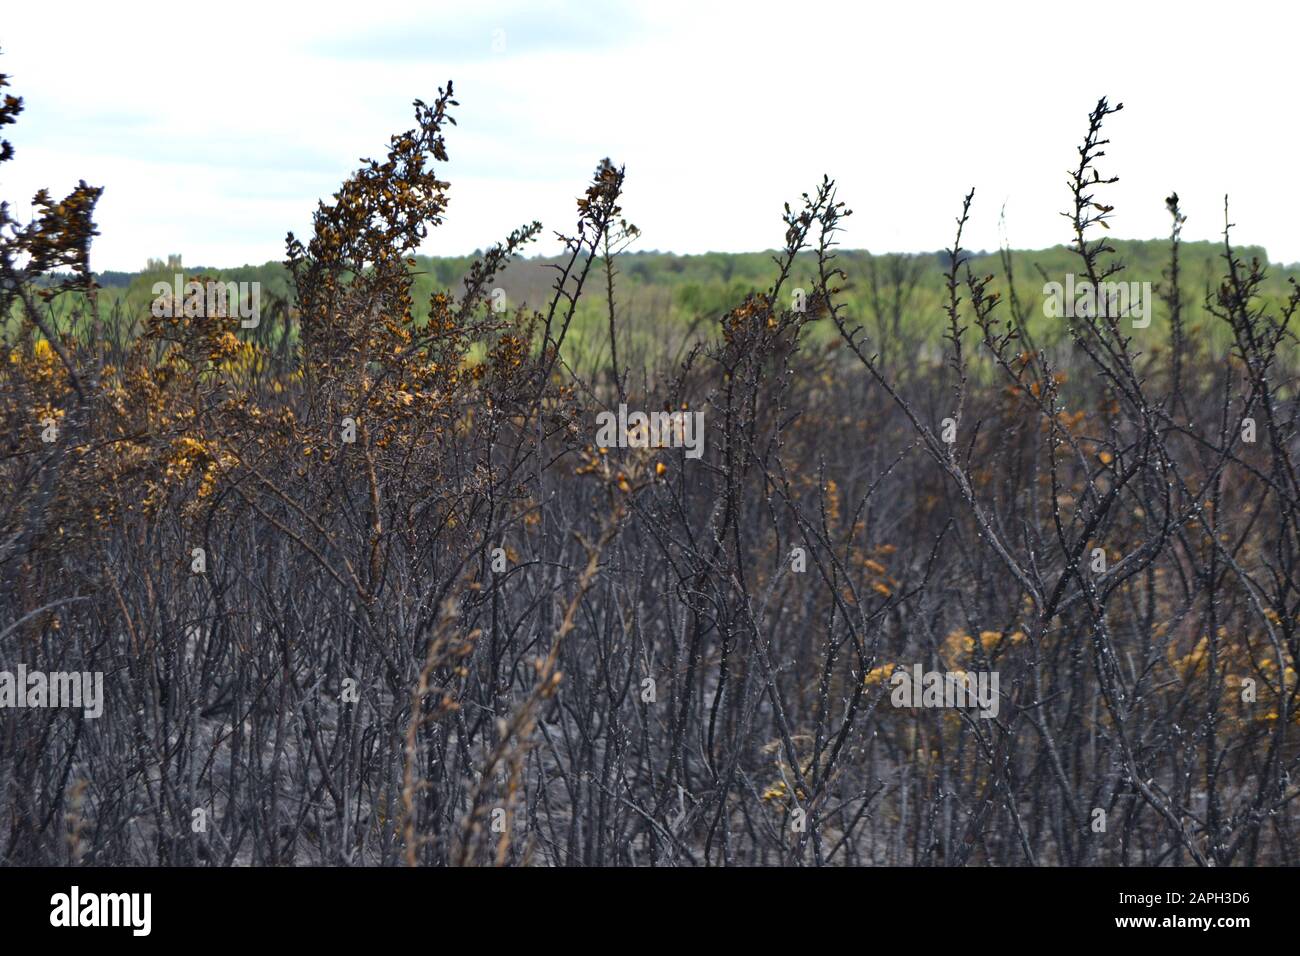 Verbrannte Gorsebüsche (Ulex europaeus) auf dem Land nach einem Brand. Schwarze, verbrannte Äste und Stämme; Asche auf dem Boden; einige gelbe Blumen blühen noch Stockfoto